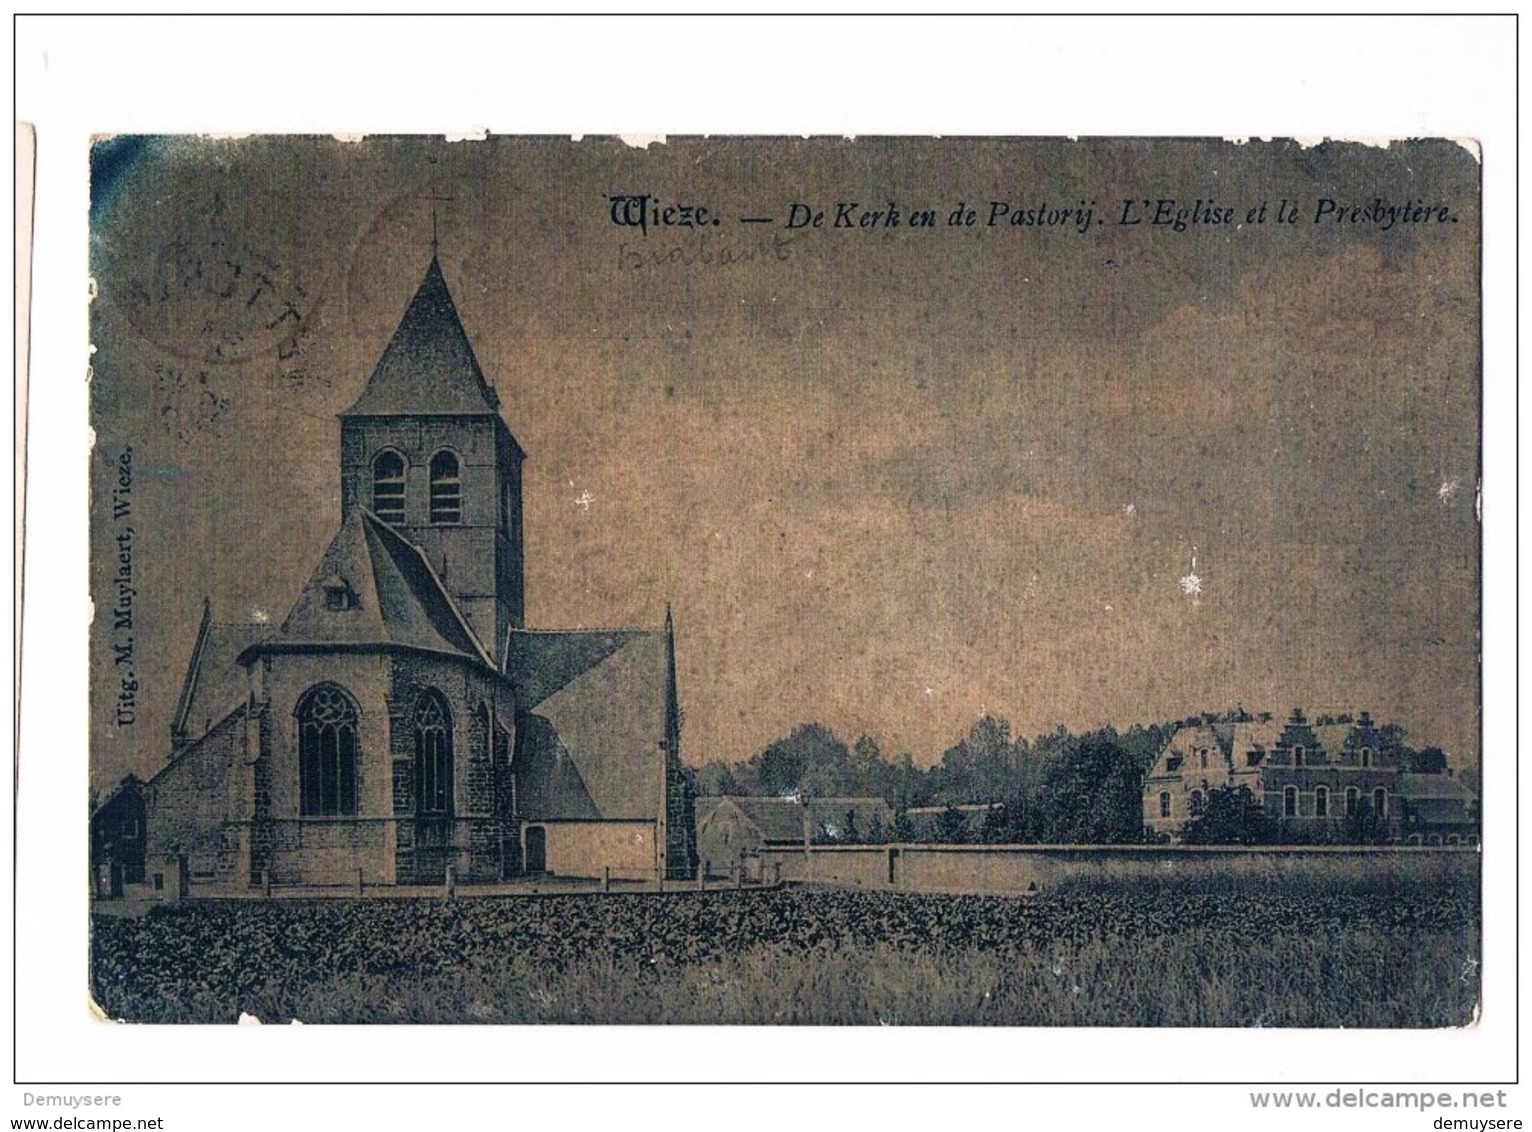 28767 - Wieze De Kerk En De Pastorij - L'eglise St Le Presbytere - Lebbeke